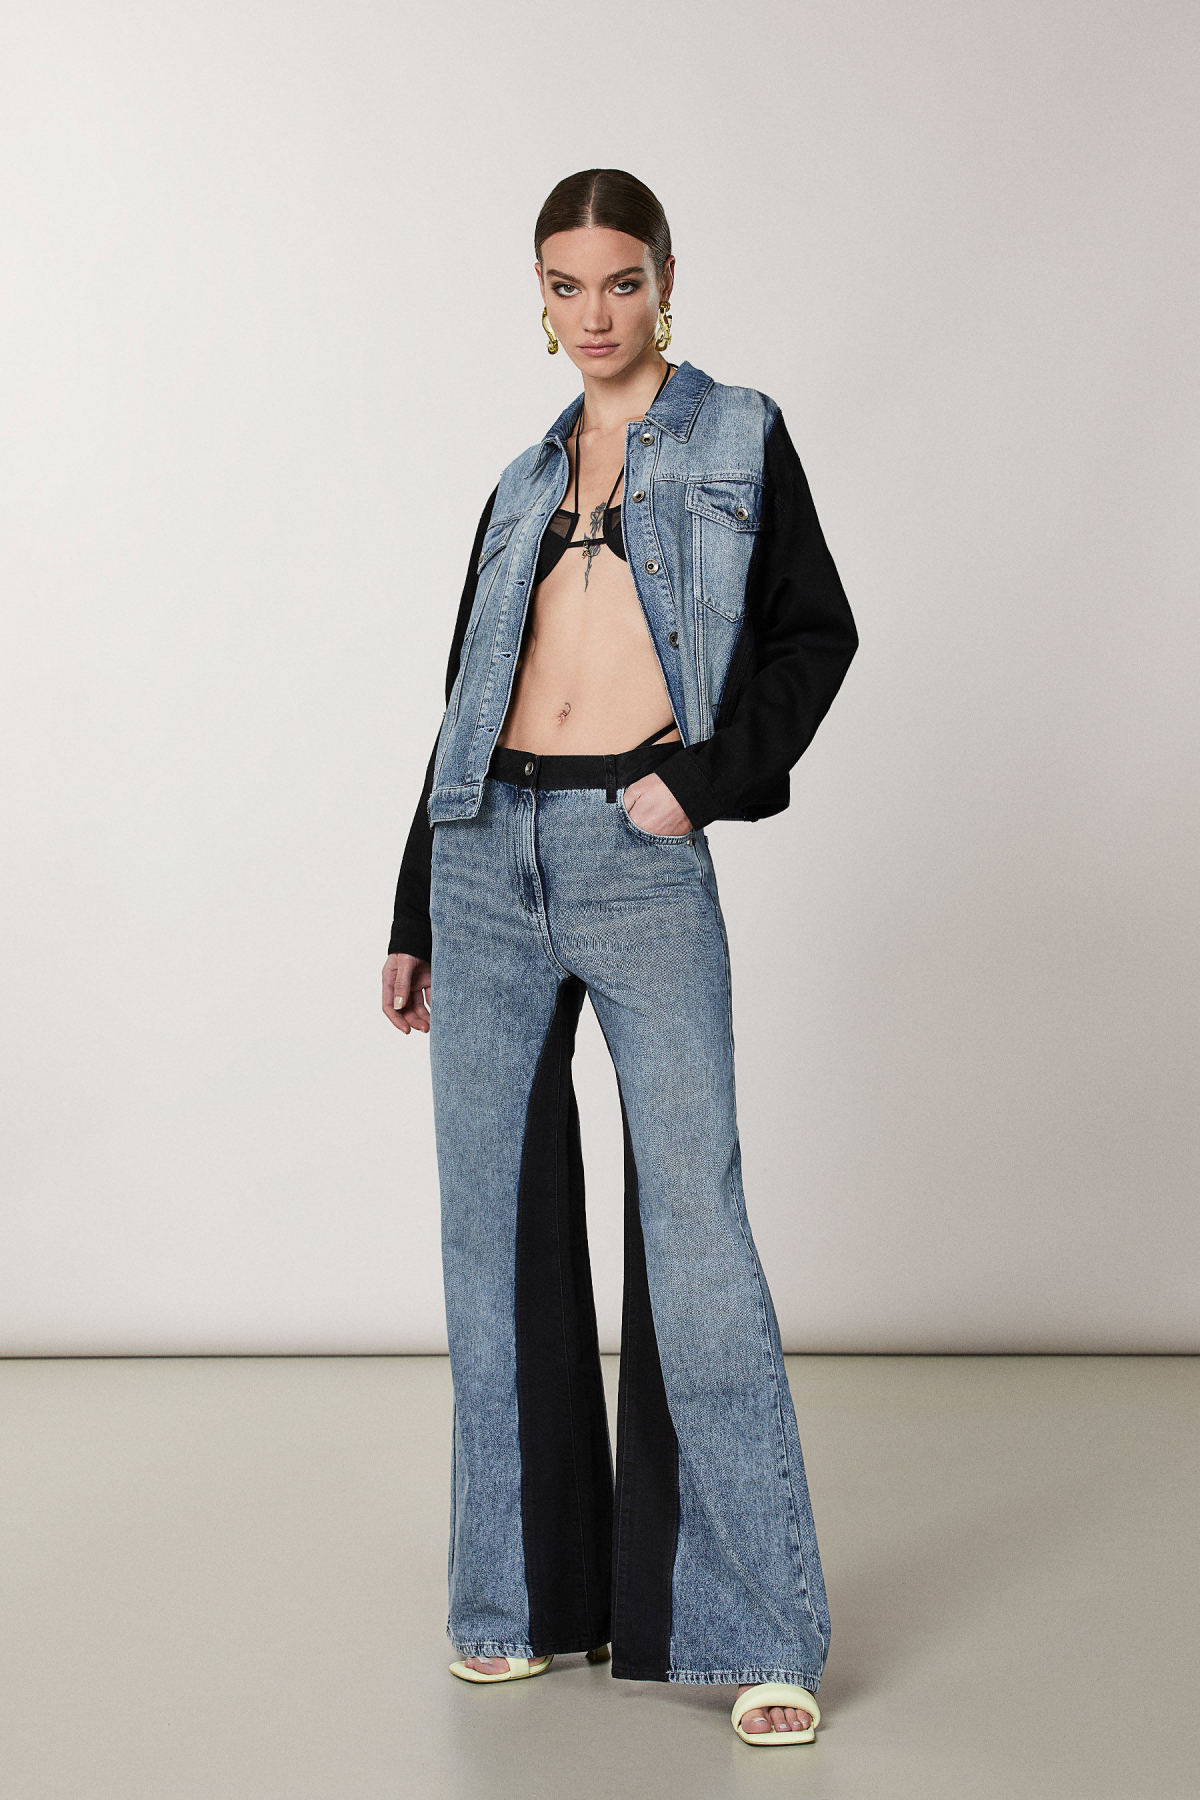 jeans in zwei farben und tendenzen in denim mode